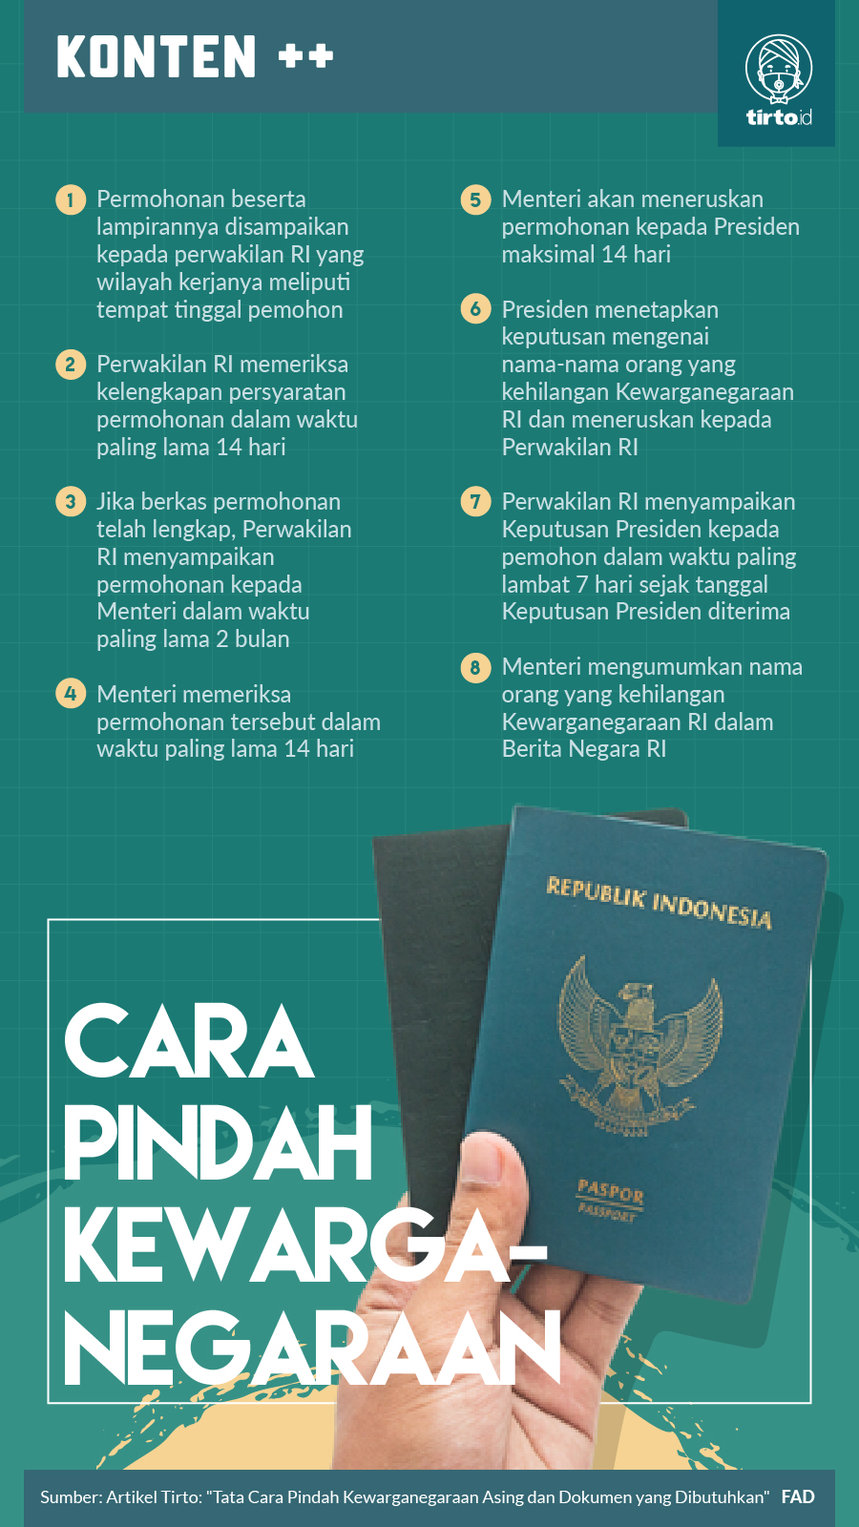 Cara memperoleh kewarganegaraan indonesia melalui naturalisasi, terlebih dahulu harus mengajukan permohonan kepada menteri